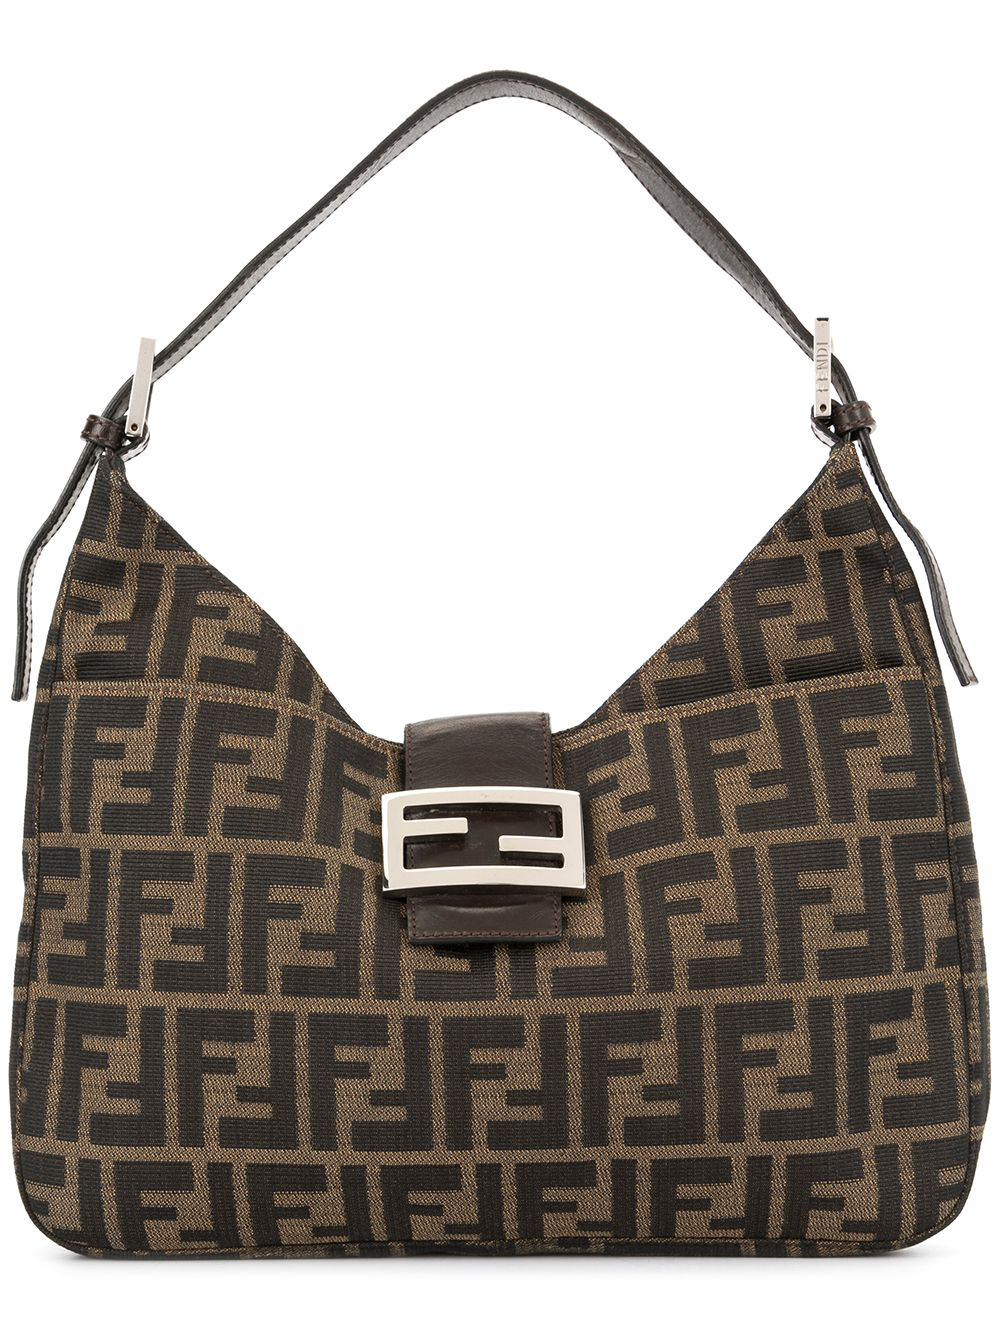 Fendi Vintage Zucca Pattern Shoulder Bag - 棕色 | ModeSens